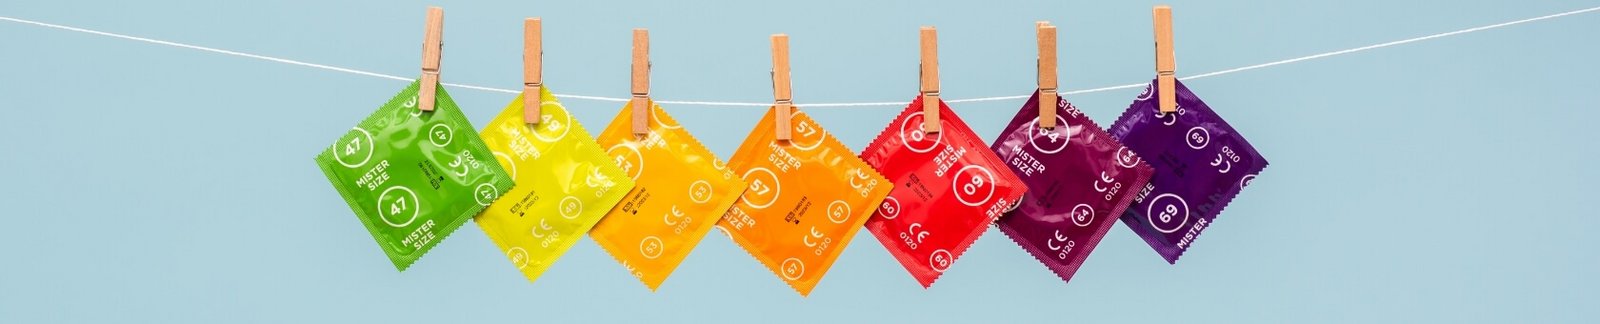 7 kondomů Mister Size na prádelní šňůře